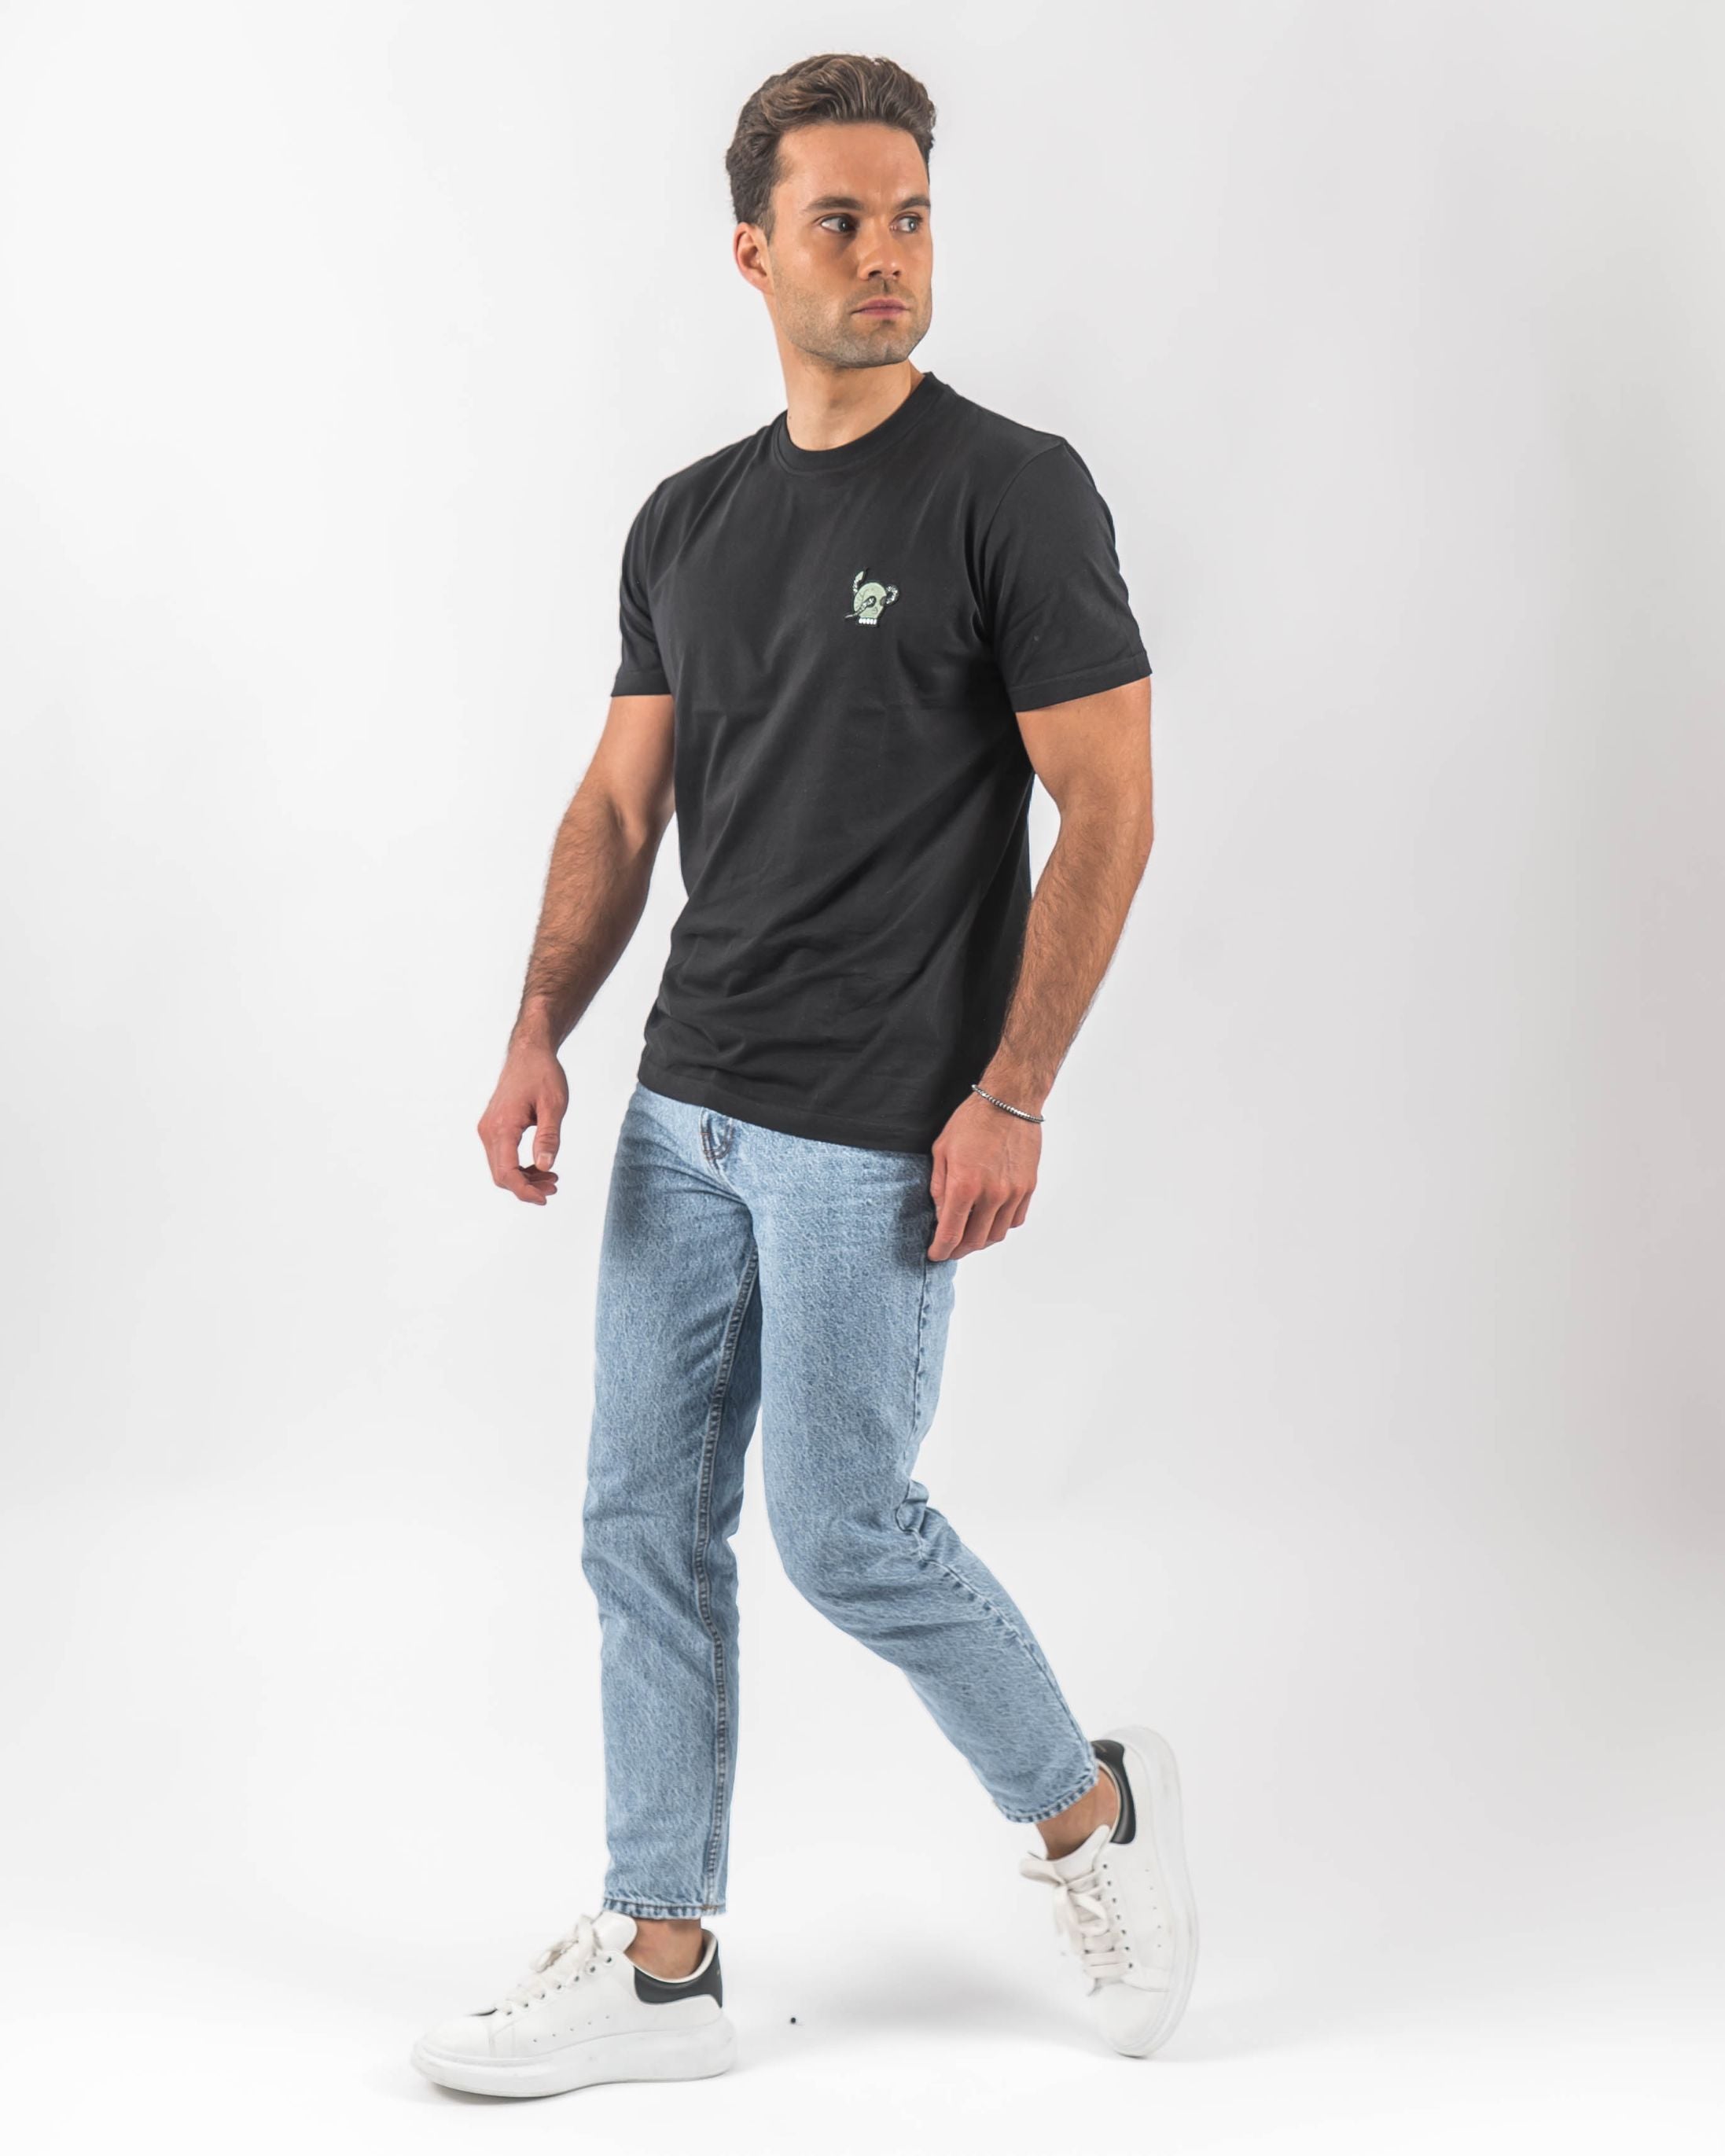 T-shirt preta com caveira verde bordada no corpo do modelo - t-shirts slim fit - roupa online - Dicci